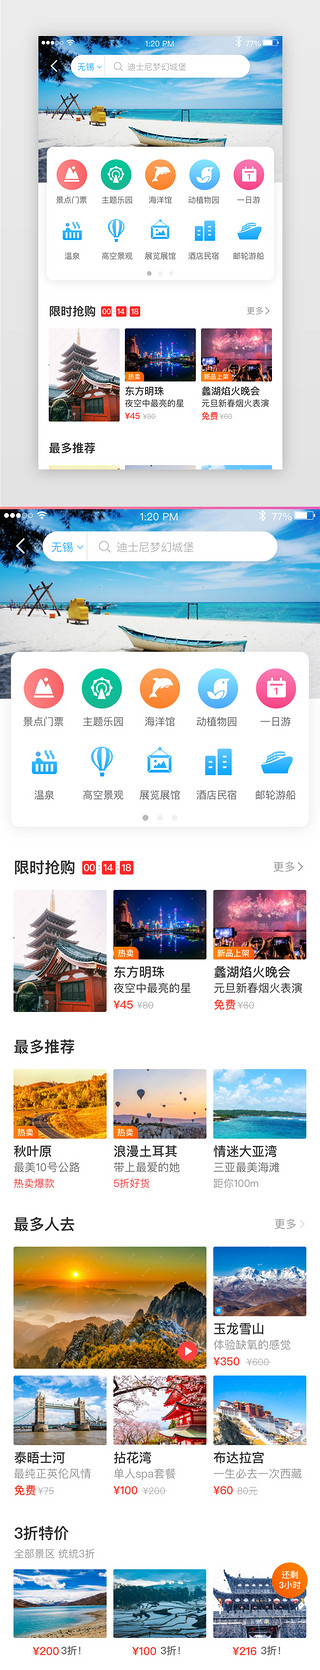 旅游景点推荐UI设计素材_旅游app景点推荐界面